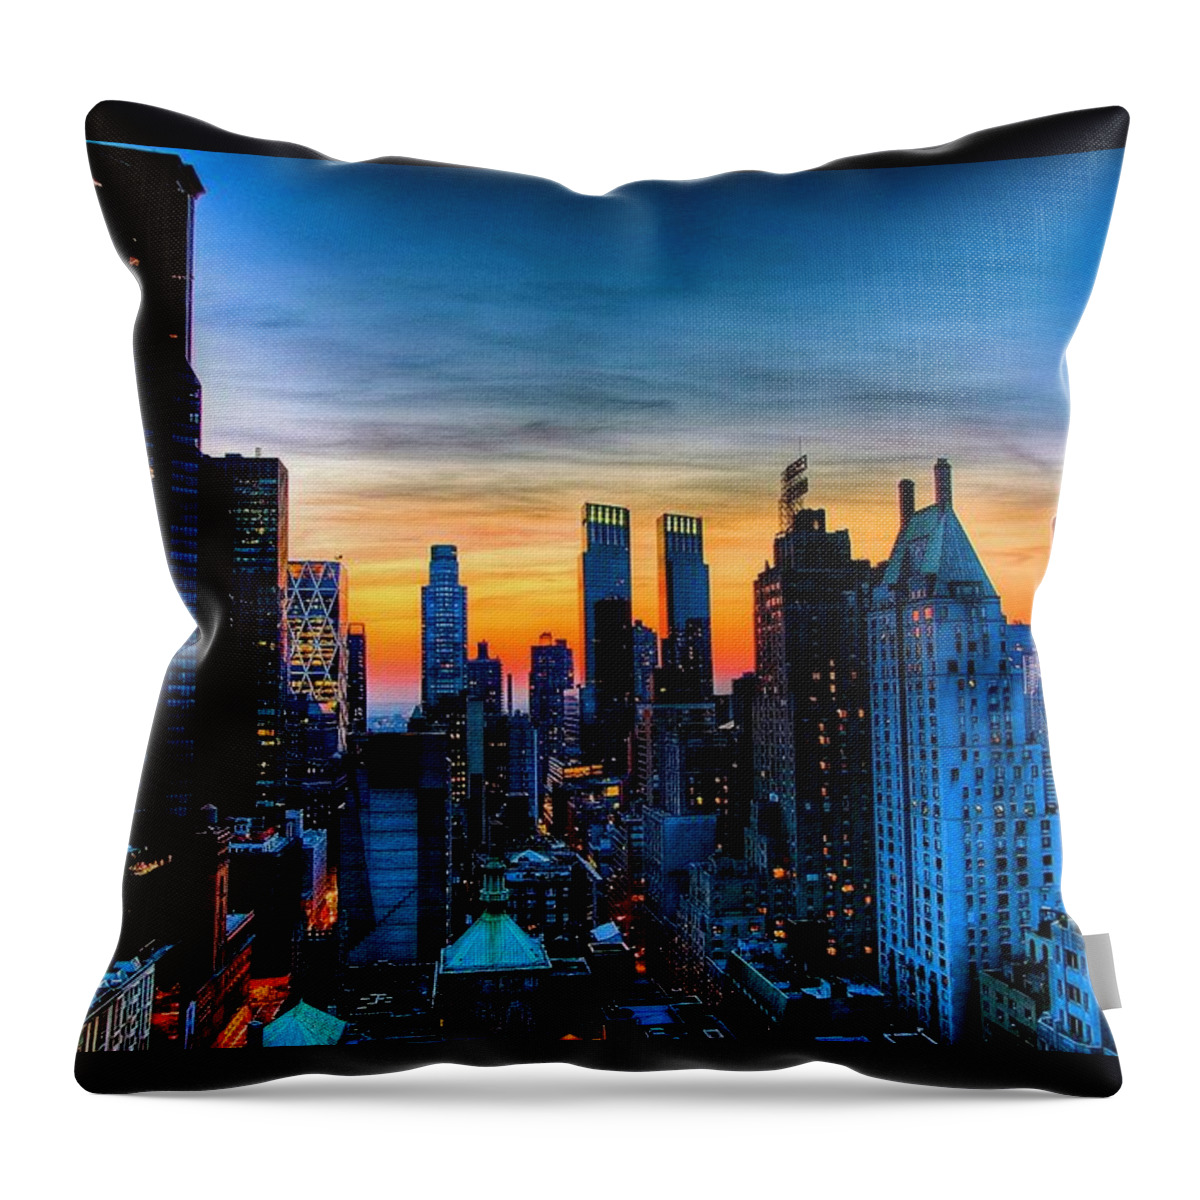 New York Prints Throw Pillow featuring the photograph Manhattan at Sunset by Monique Wegmueller